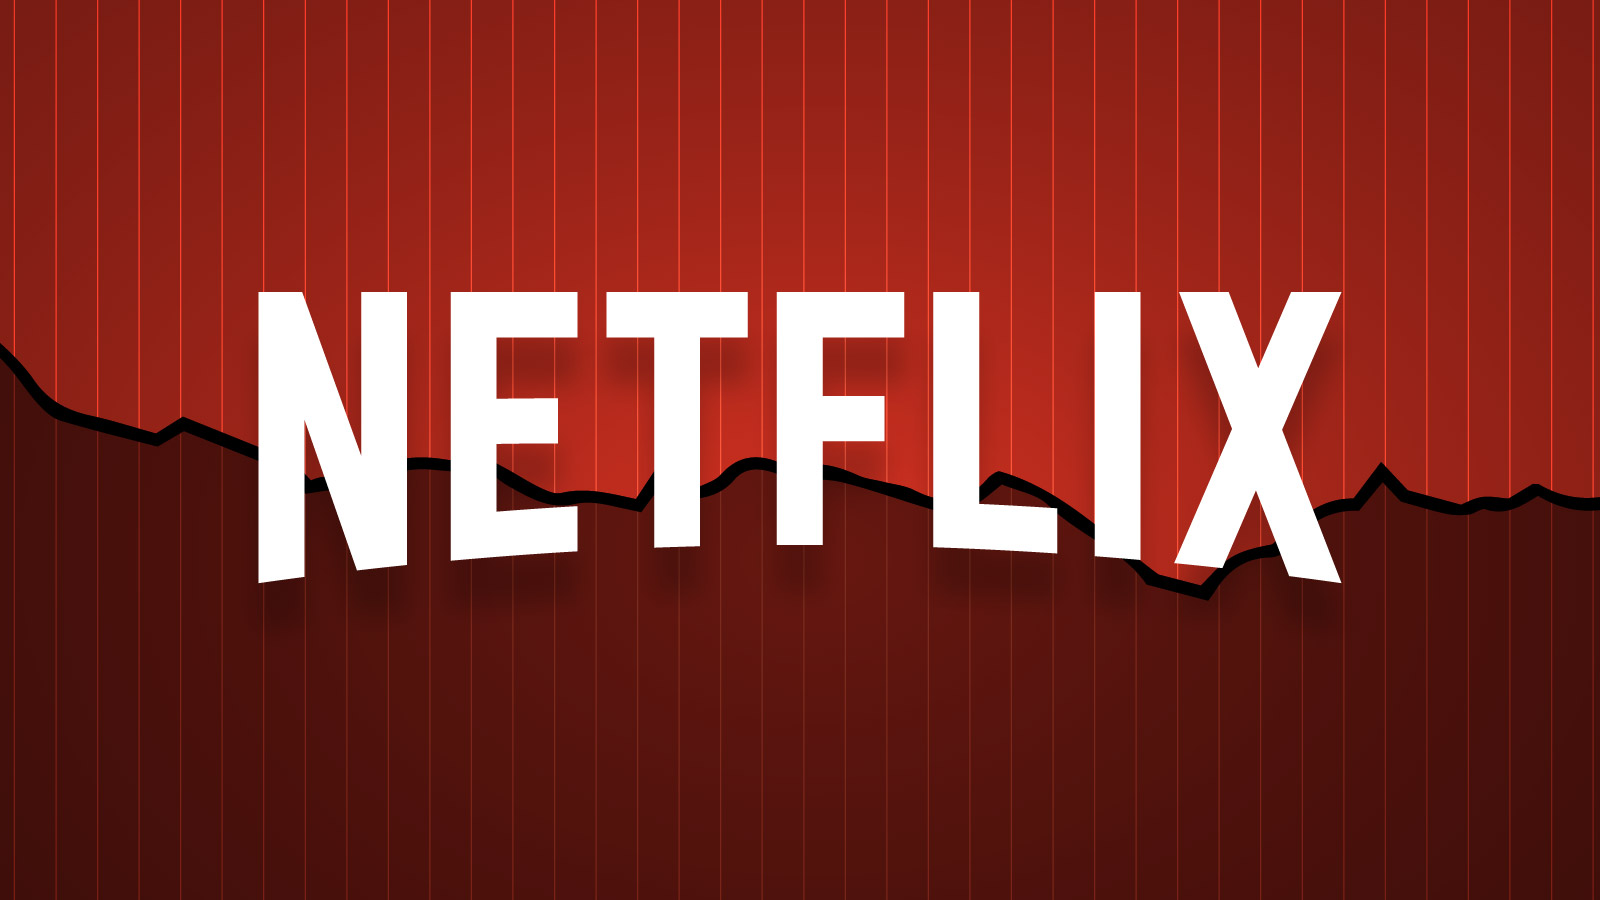 Netflix Full Hd , HD Wallpaper & Backgrounds